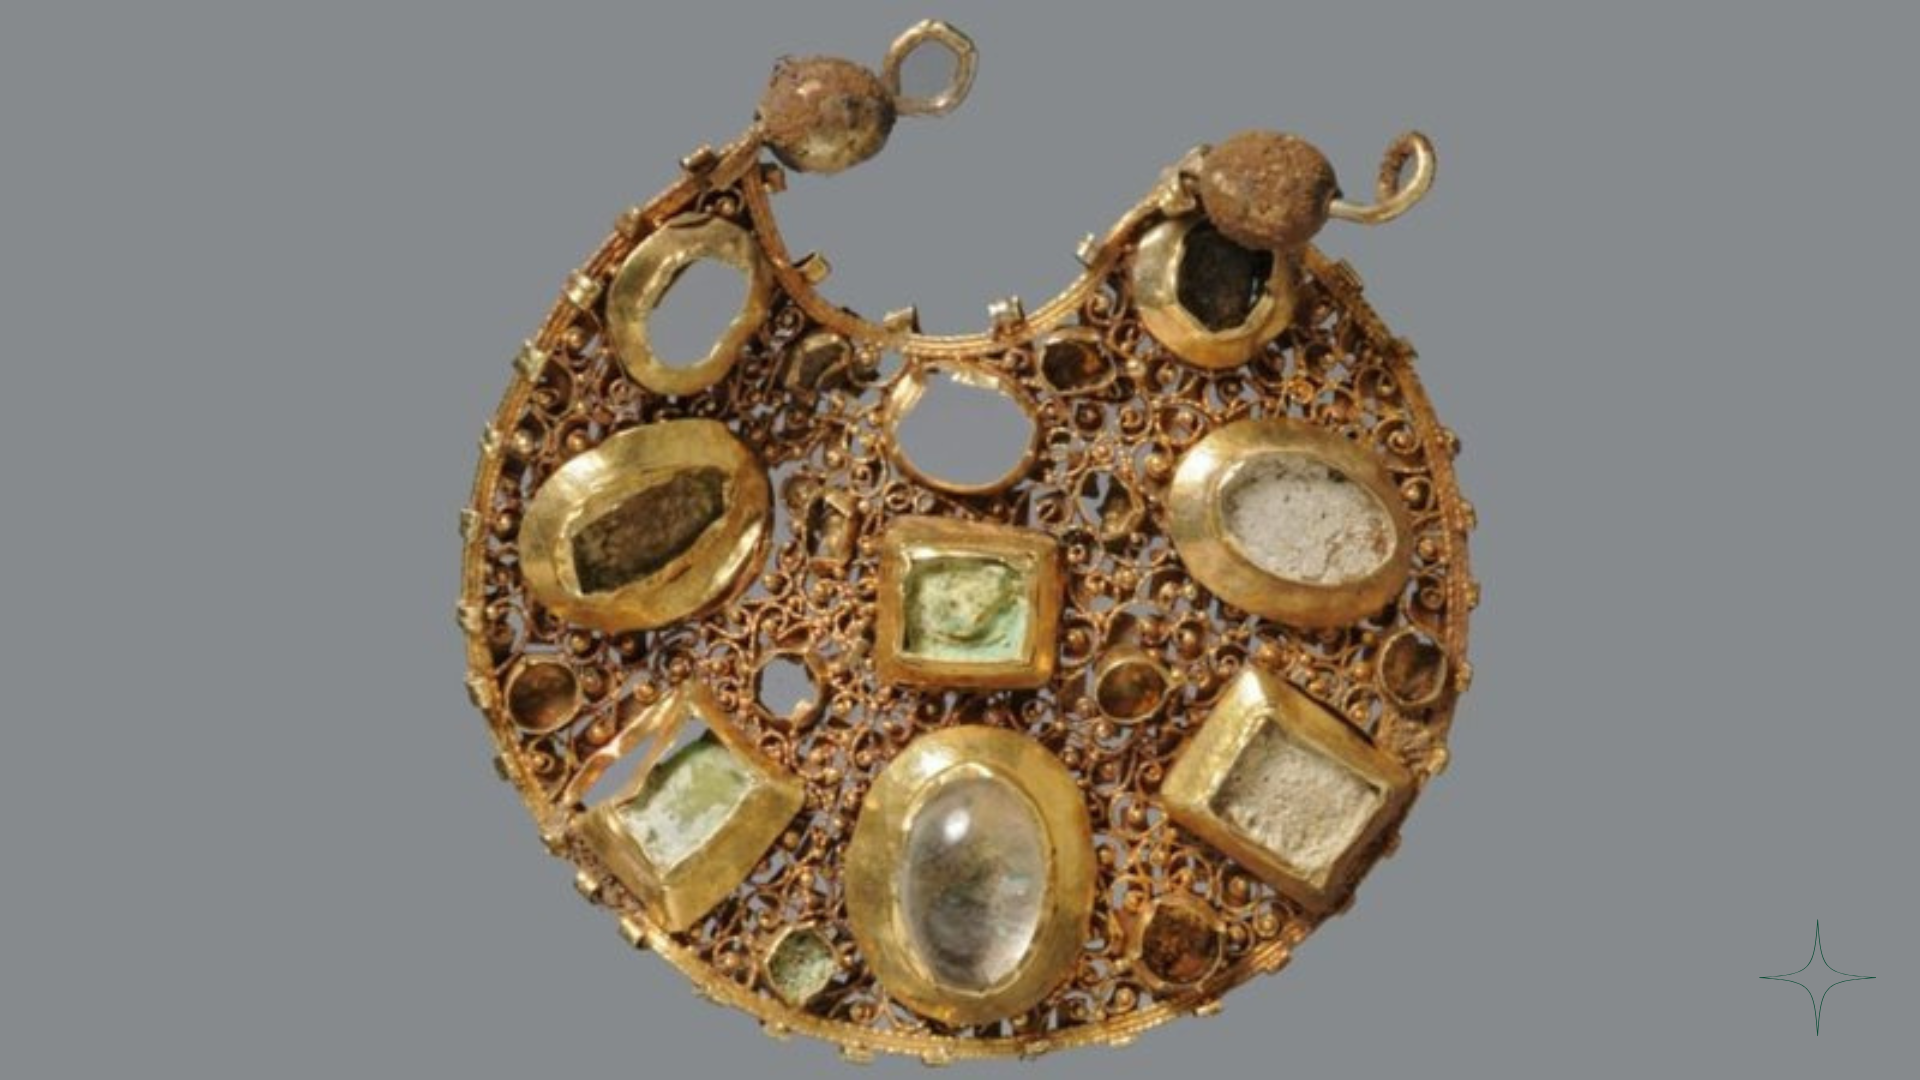 Tesouro de 800 anos: delicados brincos bizantinos são descobertos na Alemanha